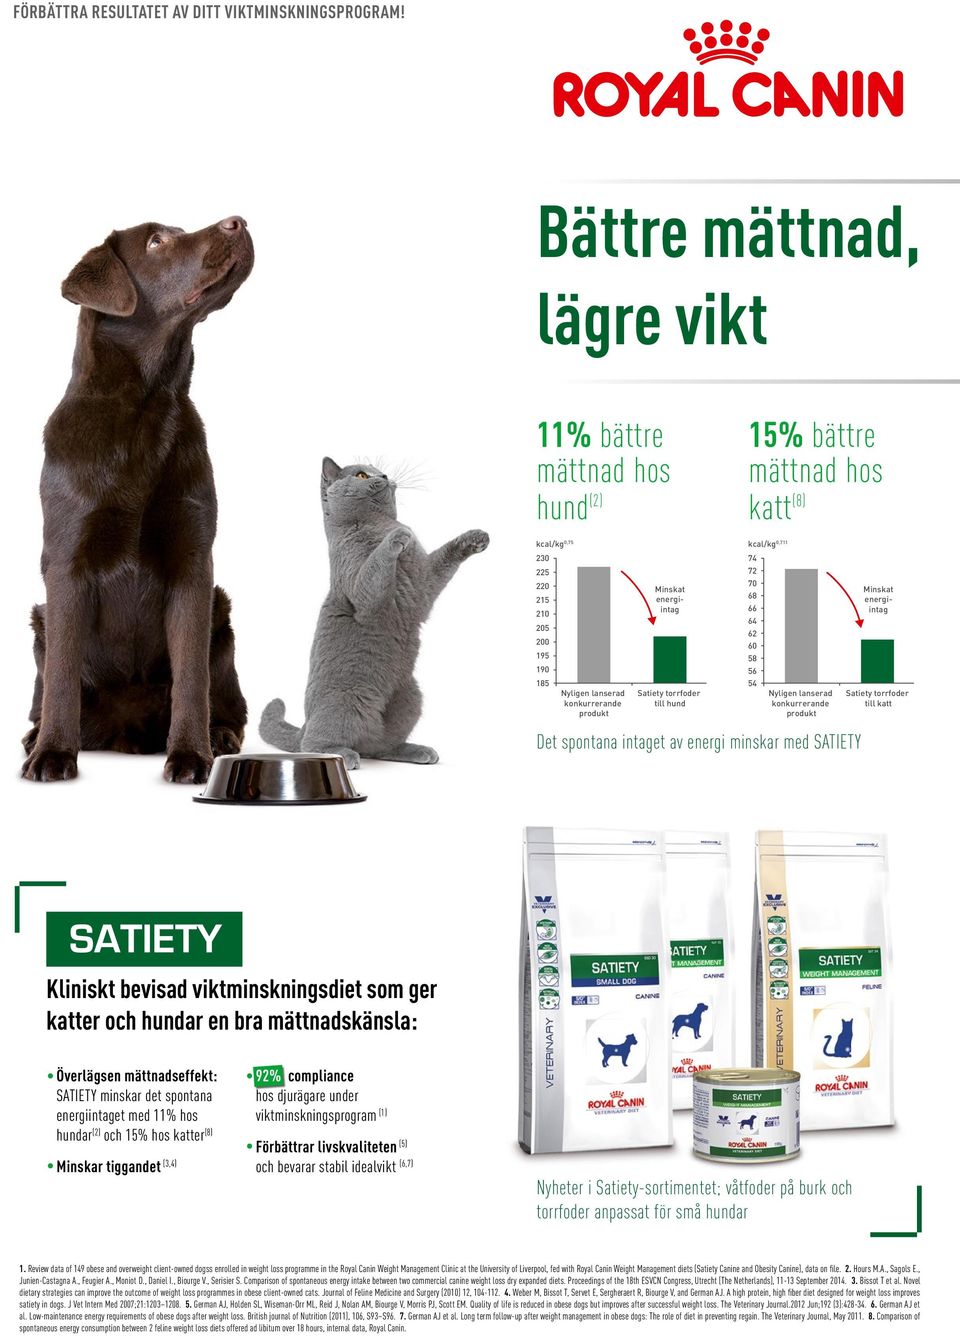 205 62 200 60 195 58 190 56 185 54 Nyligen lanserad konkurrerande produkt Satiety torrfoder till hund Nyligen lanserad konkurrerande produkt Satiety torrfoder till katt Det spontana intaget av energi